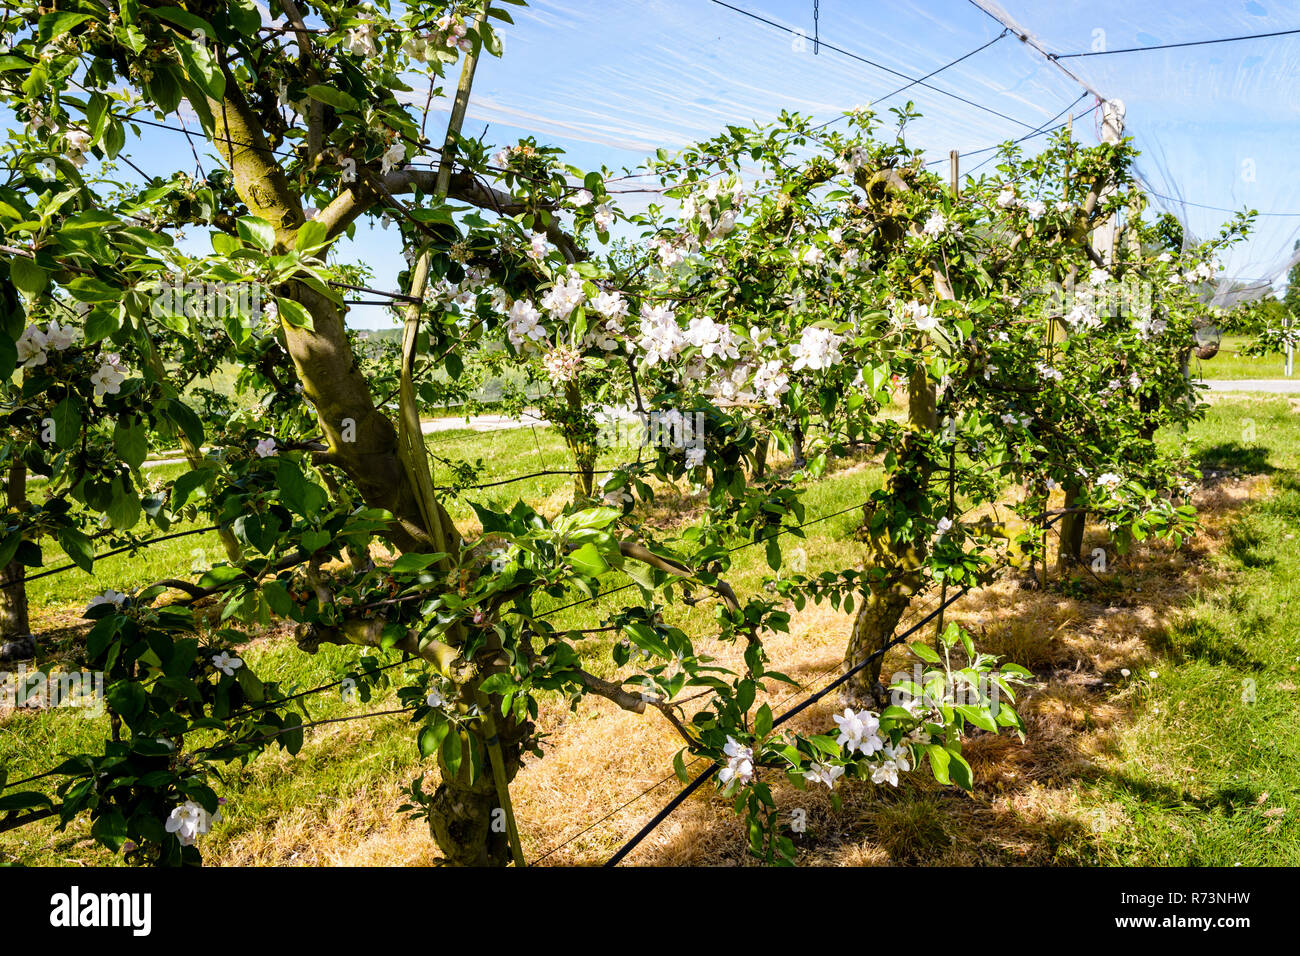 Un meleto che filari di alberi in fiore sono protetti contro uccelli e grandine da una sottile rete bianca sopra stirata, nella campagna francese. Foto Stock